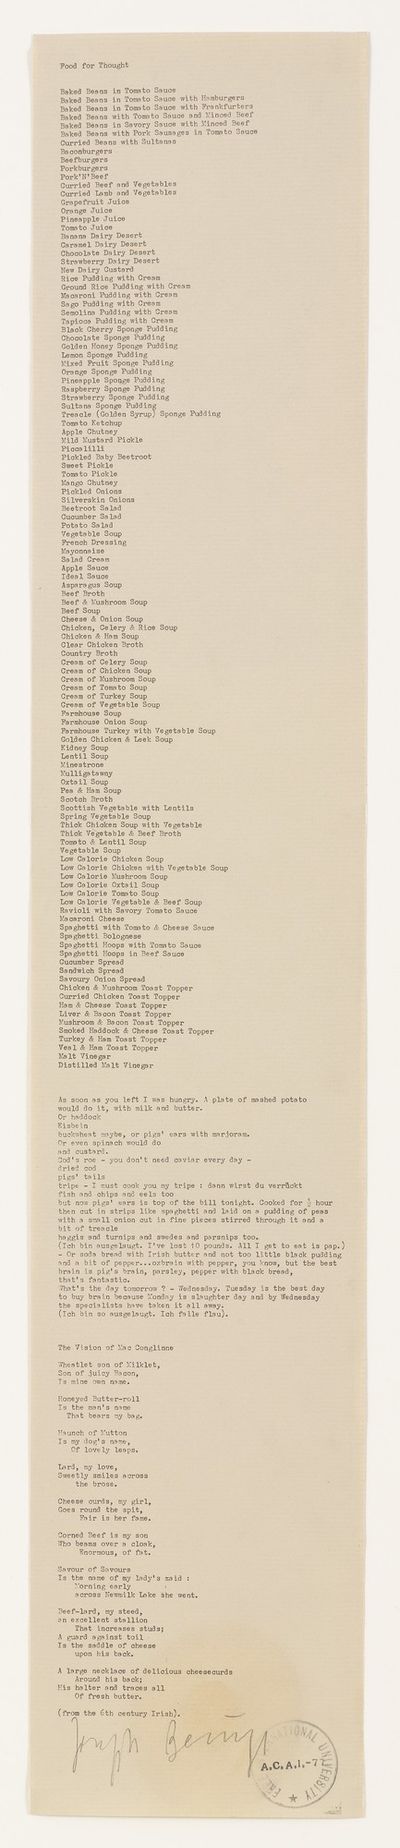 郑波，《生存手册 I（手抄1961年〈上海野生食用植物〉）》，2015。展览现场："被打断的饭局"，昊美术馆，上海（2020年8月8日至10月31日）。图片提供：昊美术馆。